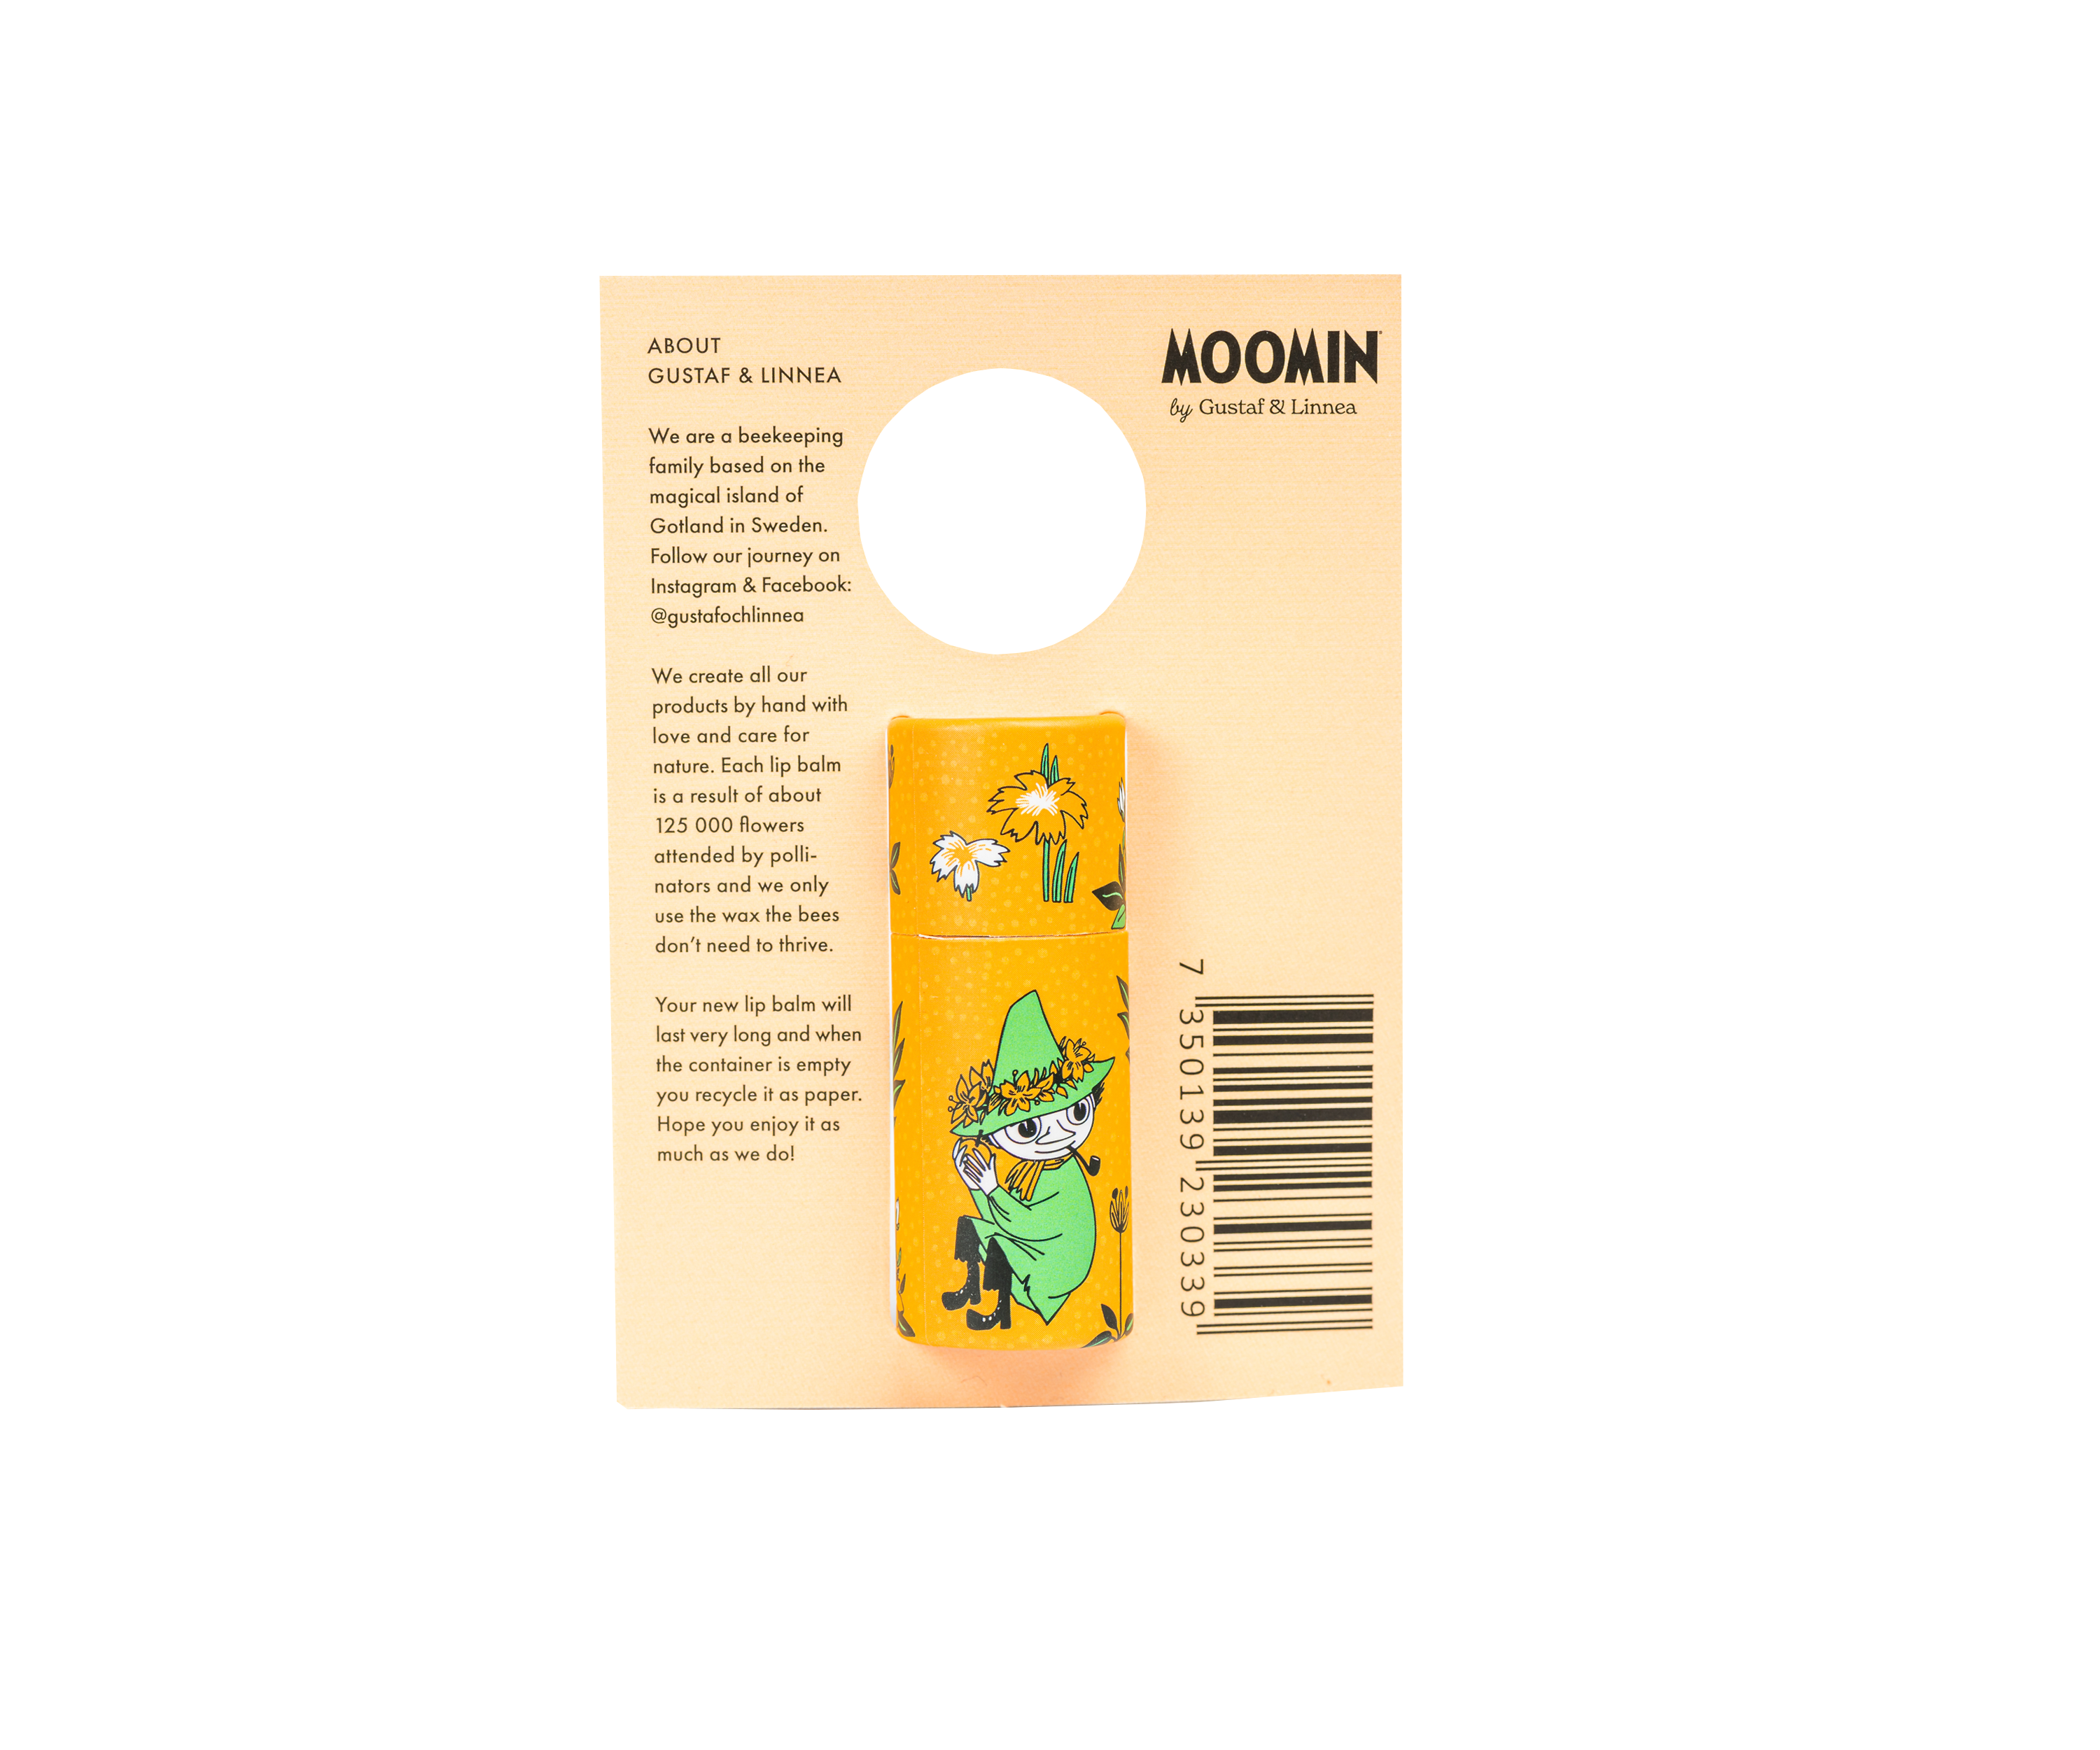 Moomin by G&L - Läppcerat av bivax med kokos & honung